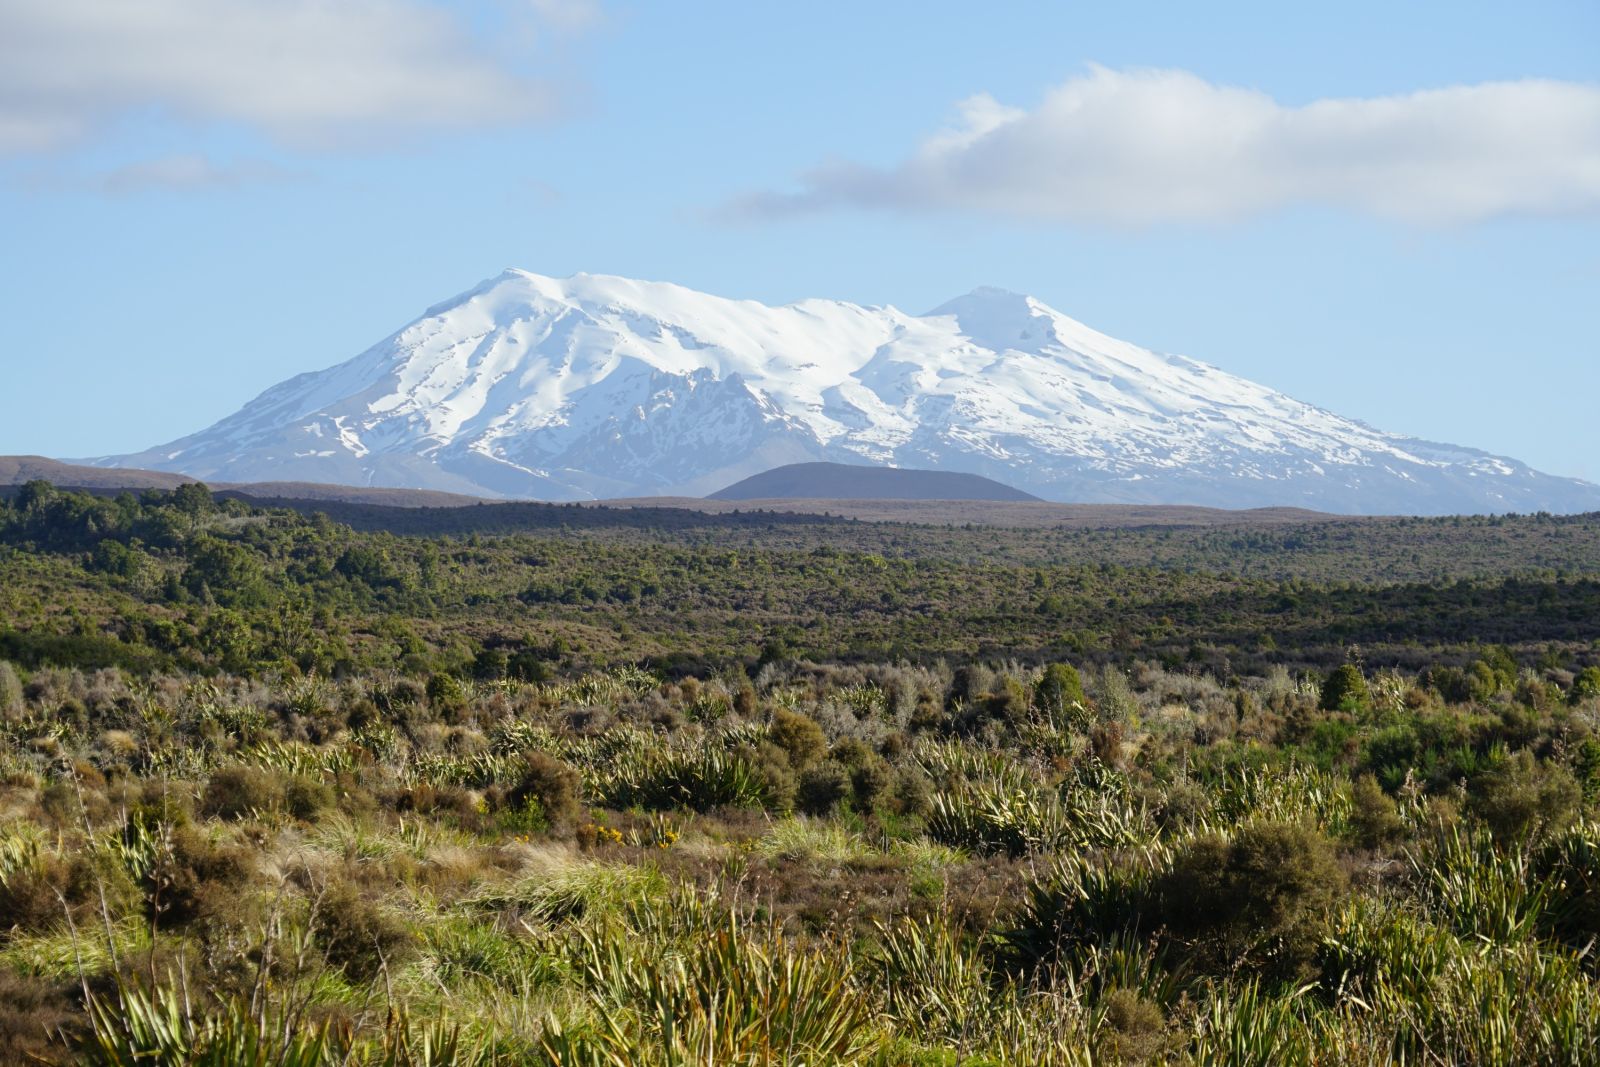 Tolle Landschaften entlang der höchsten Berge der Nordinsel – hier im Bild der Mt. Ruapehu mit seinen 2797 Metern.